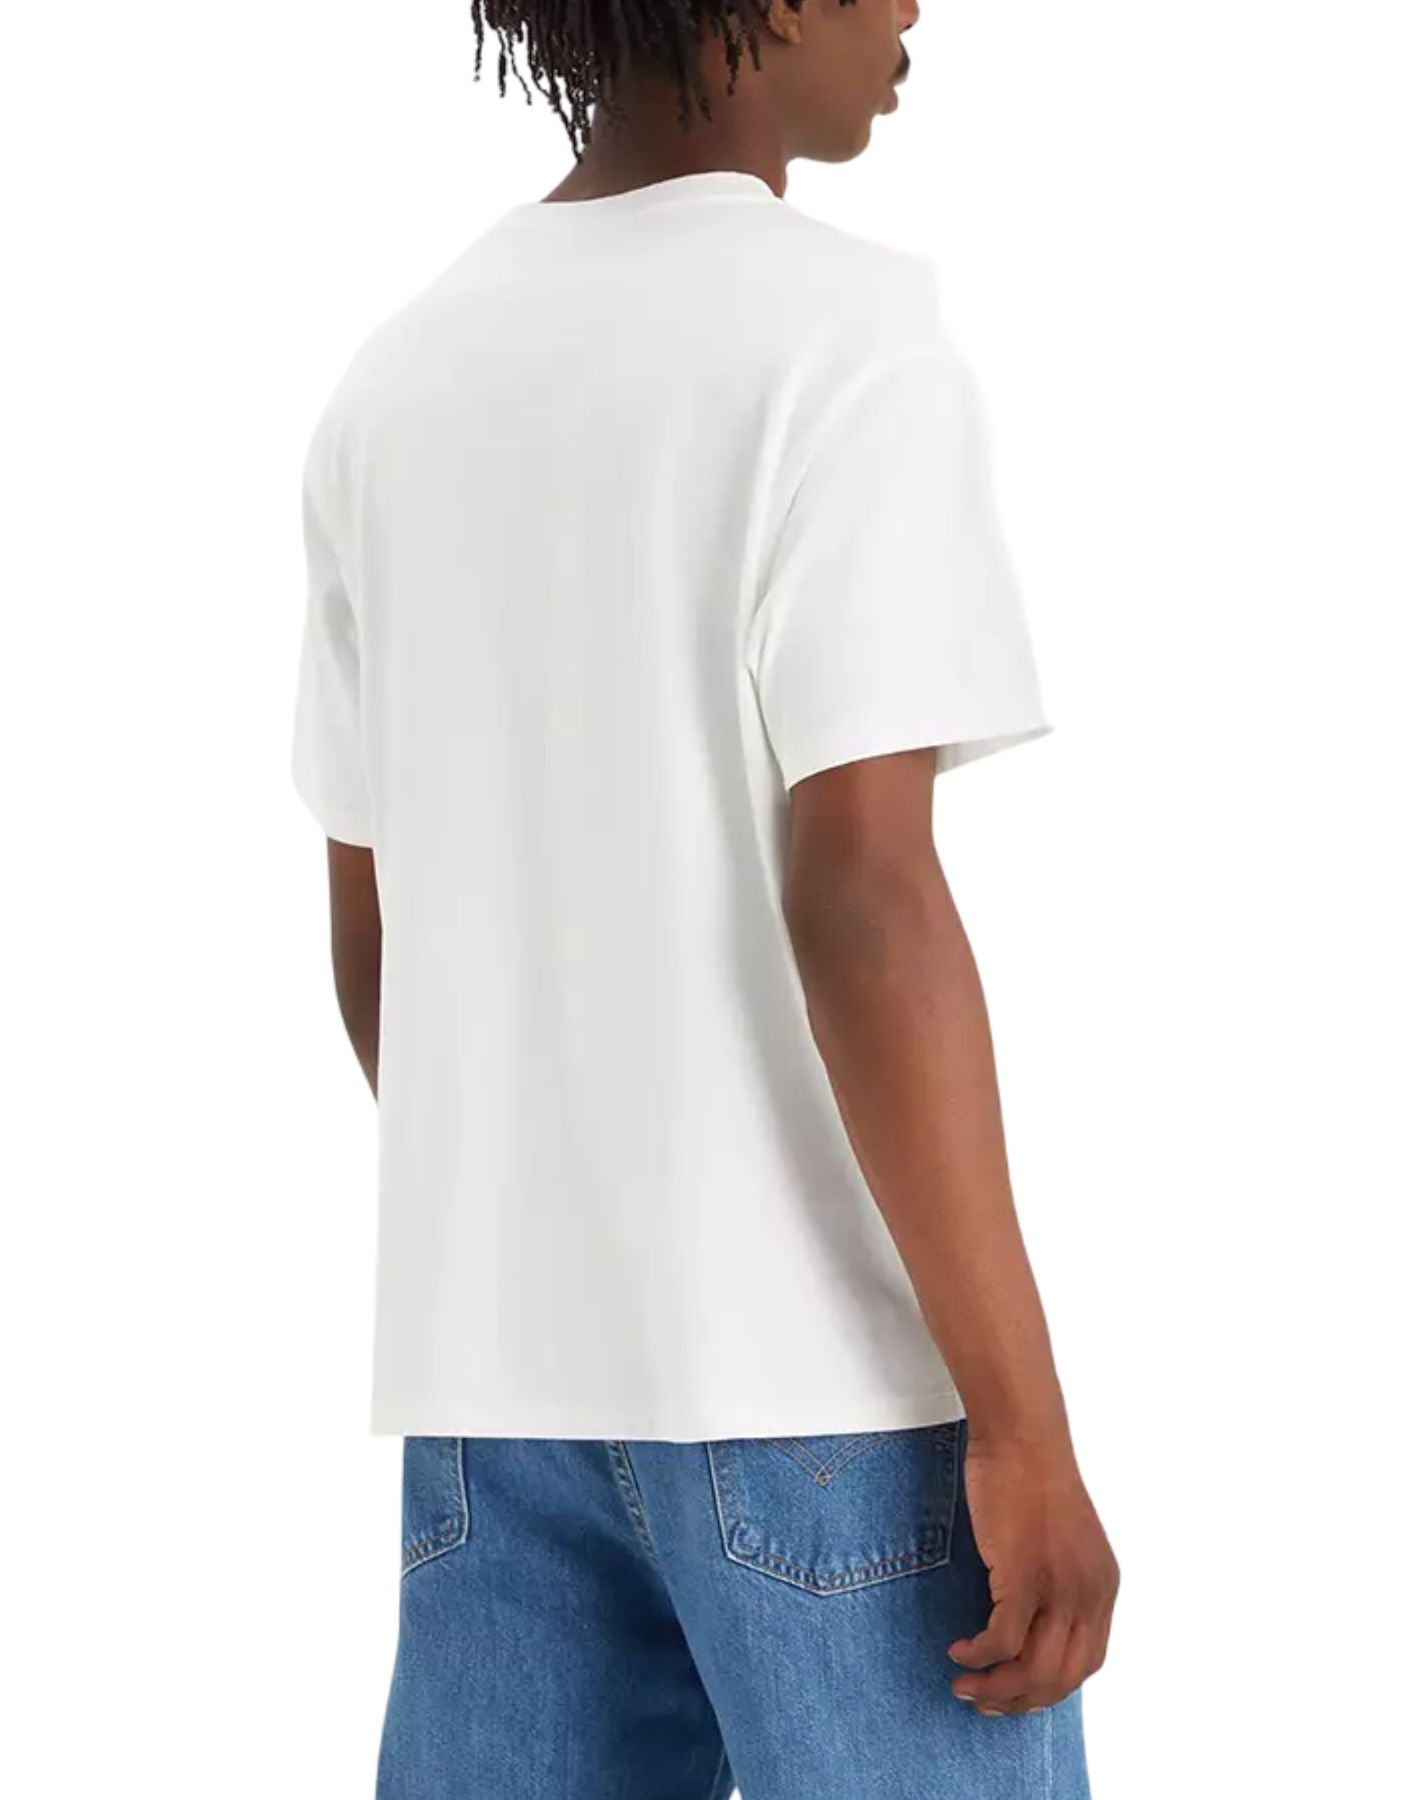 Camiseta para el hombre 87373 0105 Levi blanco